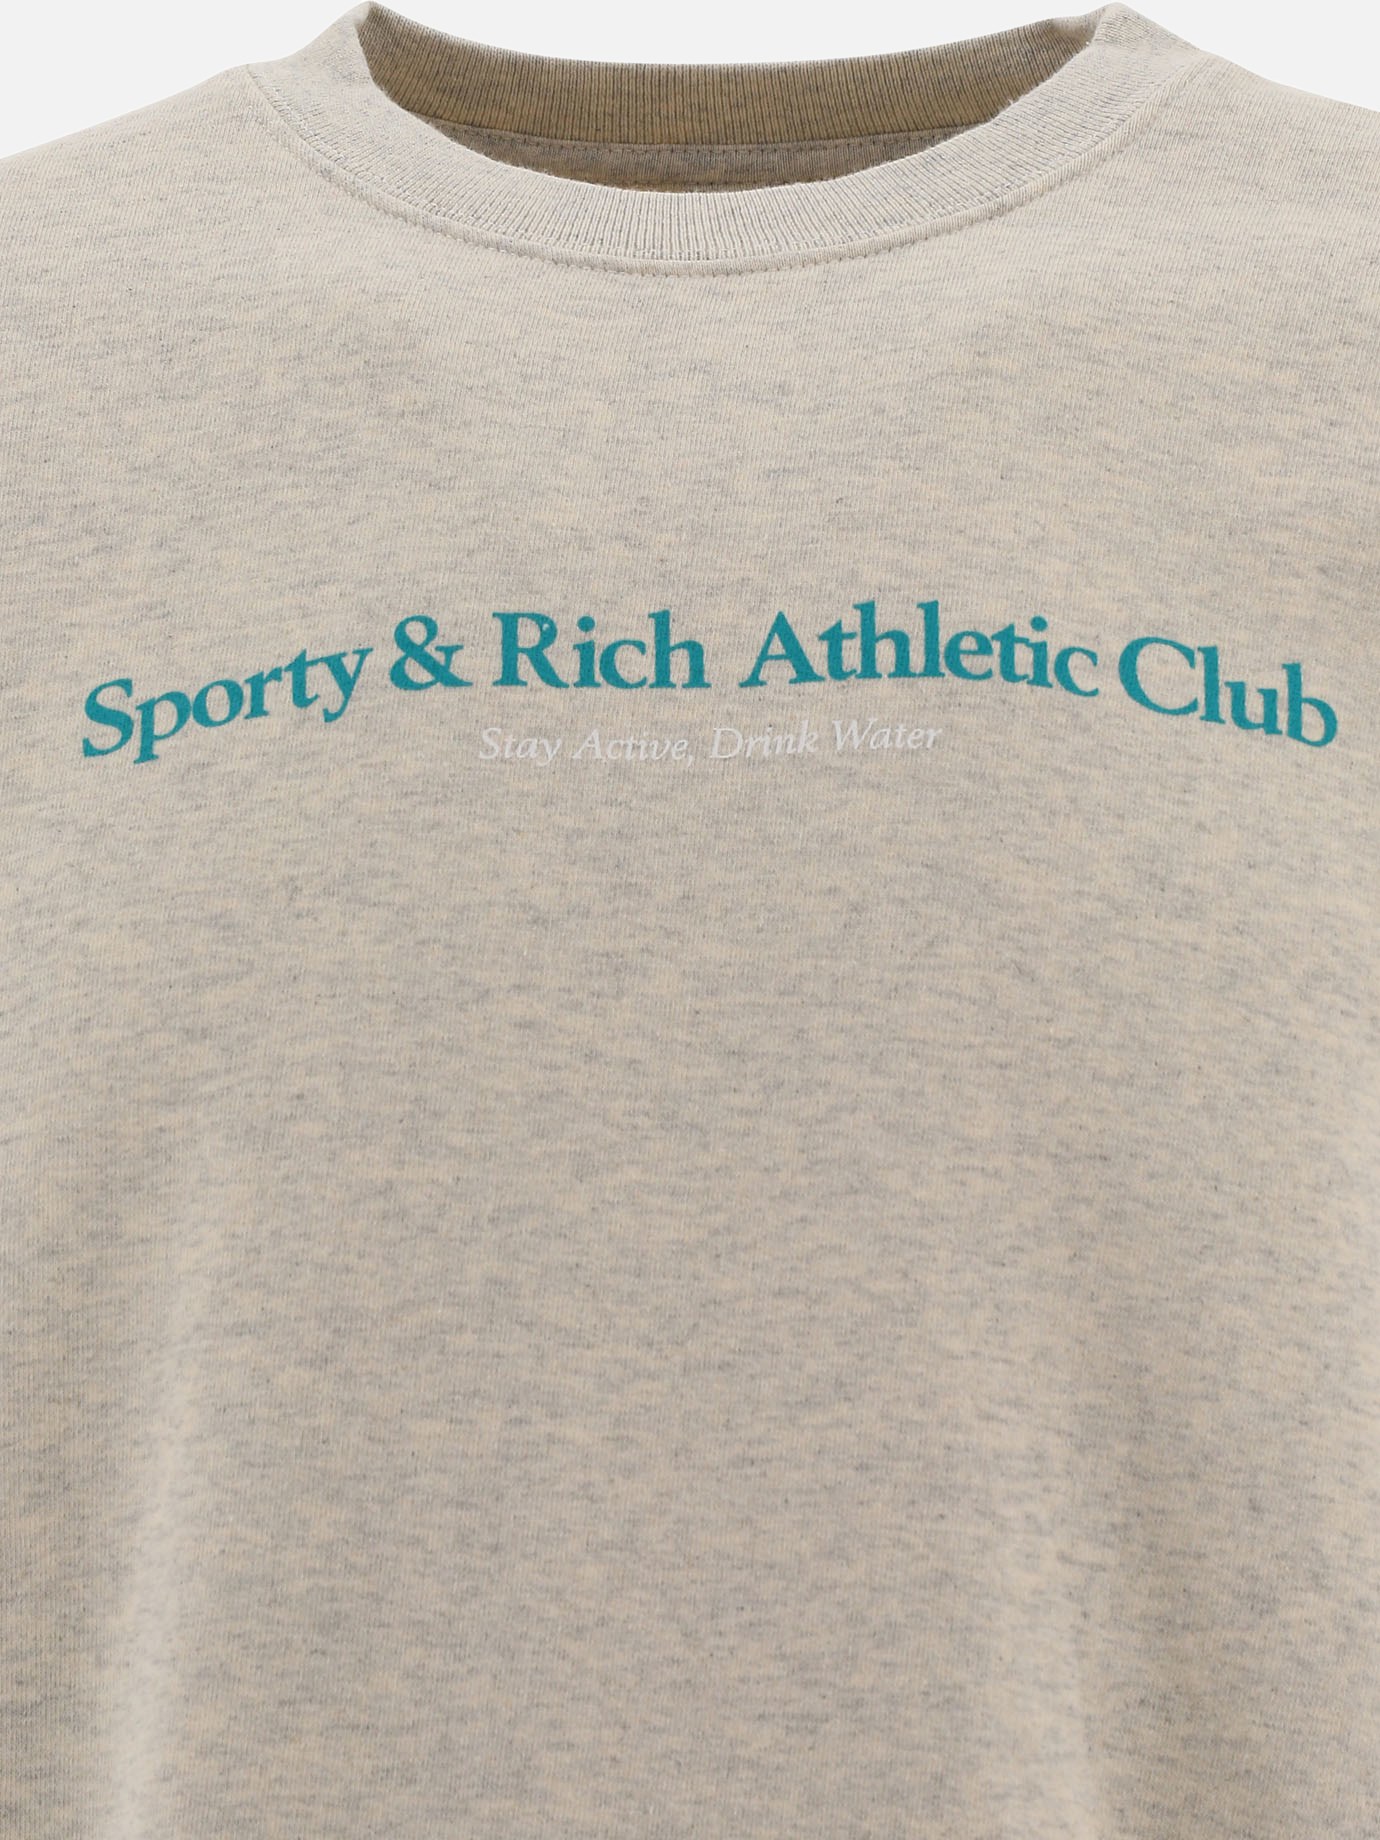  Athletic Club  sweatshirt by Sporty & Rich